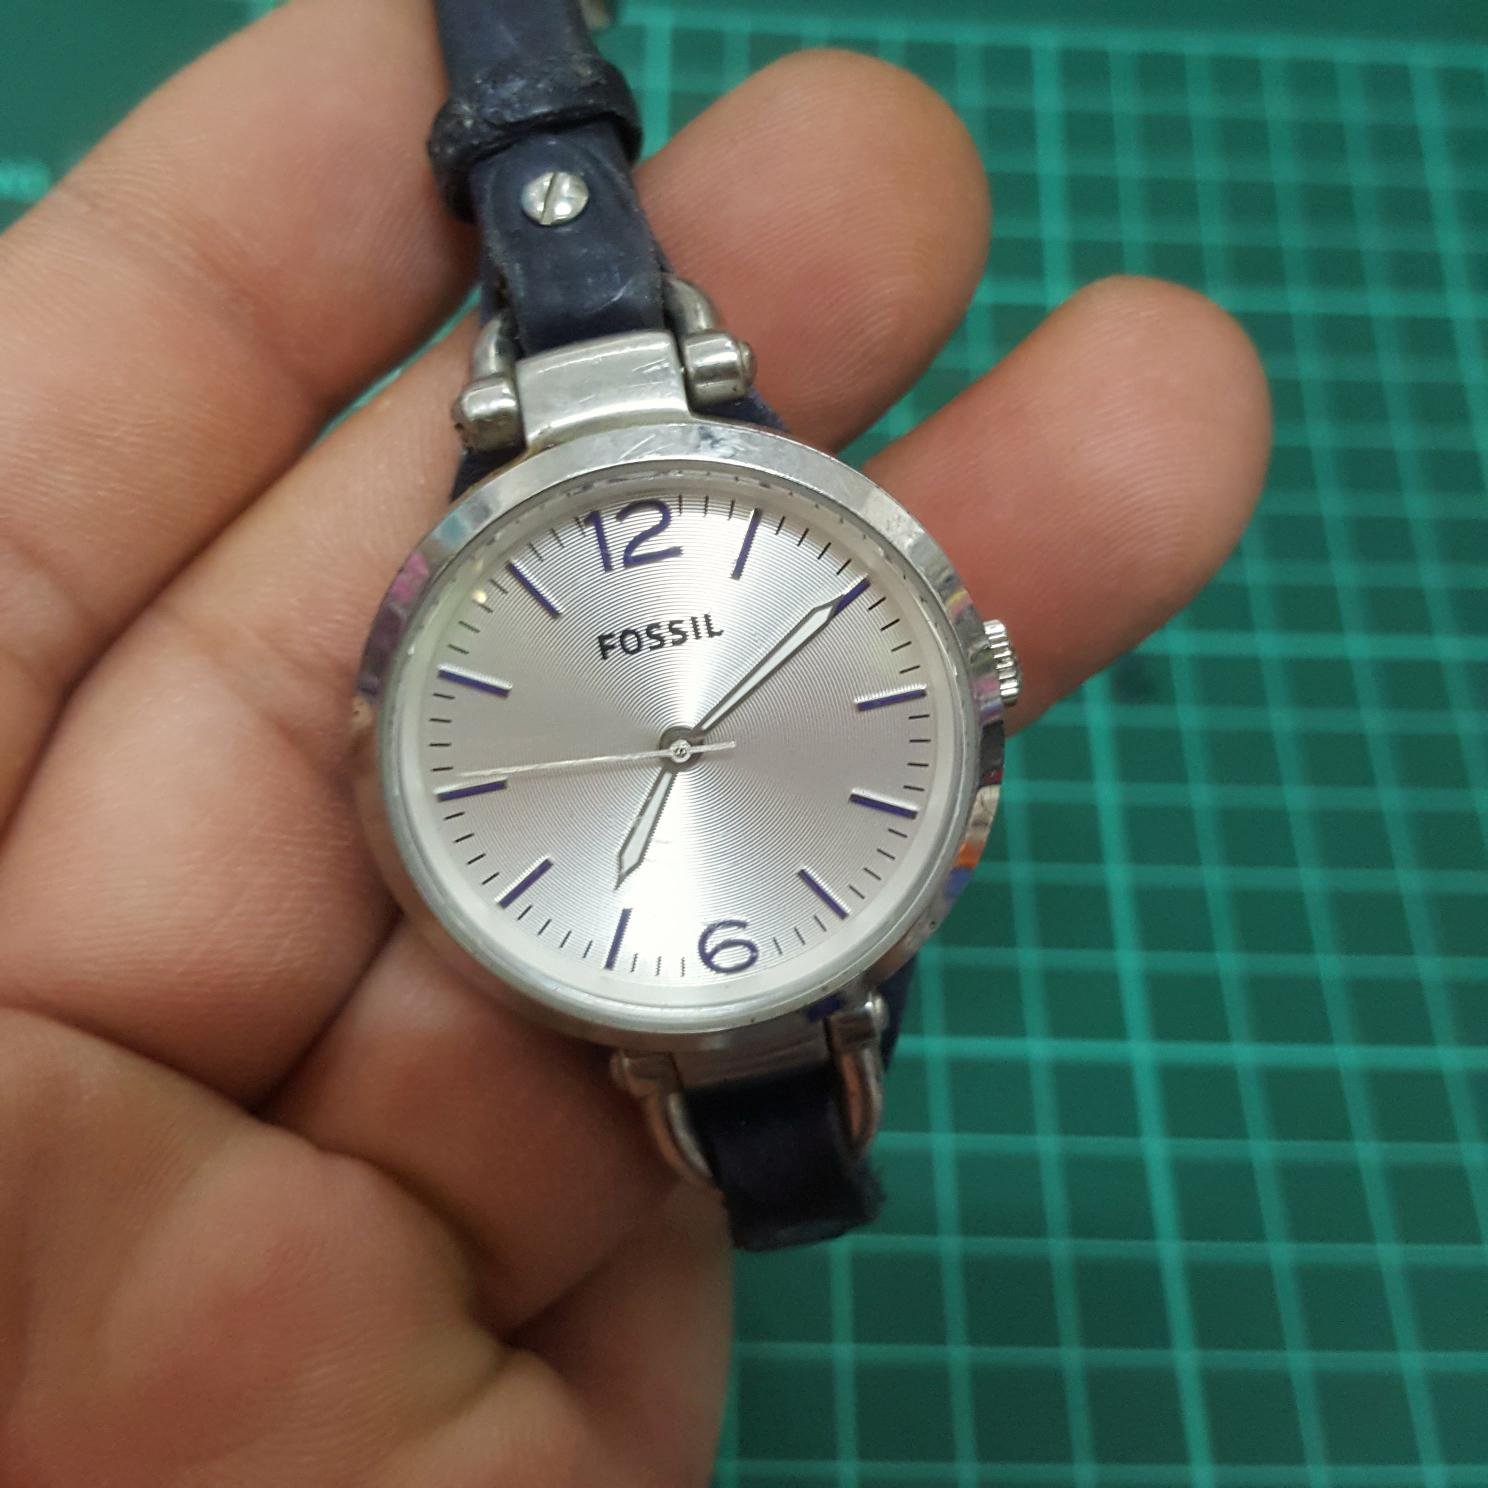 FOSSIL 中性錶 隨便賣 好壞自己去拼 零件料件配件 黑白賣 隨便賣 另有 機械錶 老錶 非 EAT OMEGA ROLEX IWC A09